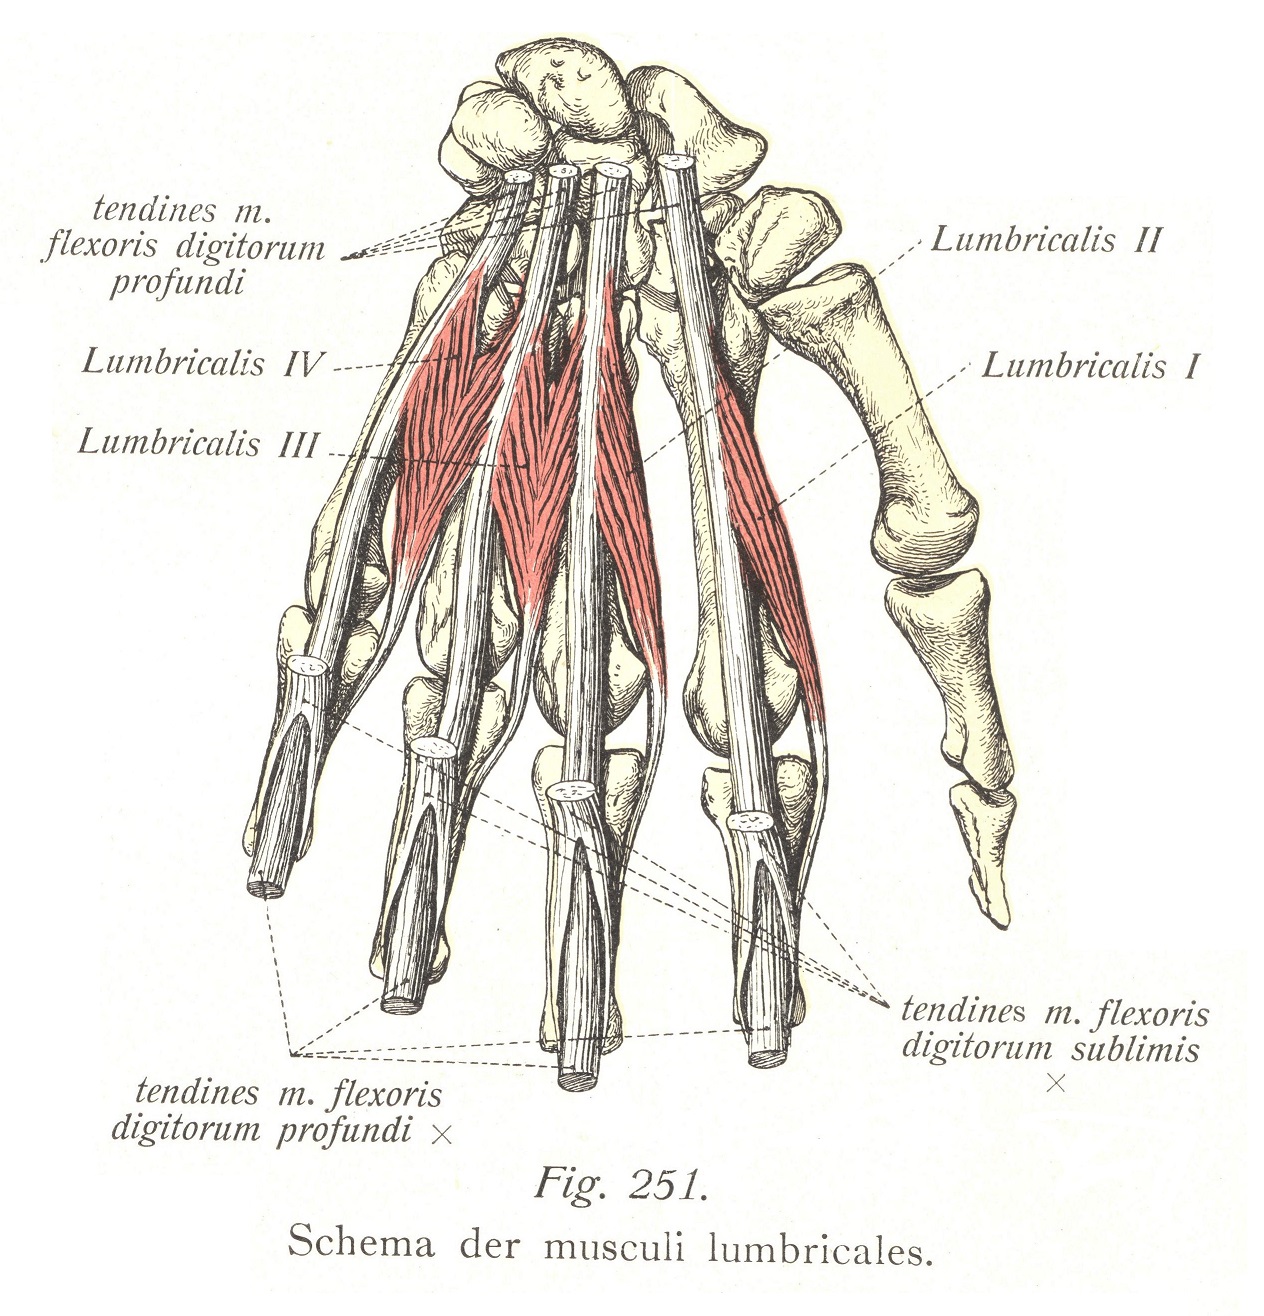 Schema der musculi lumbricales